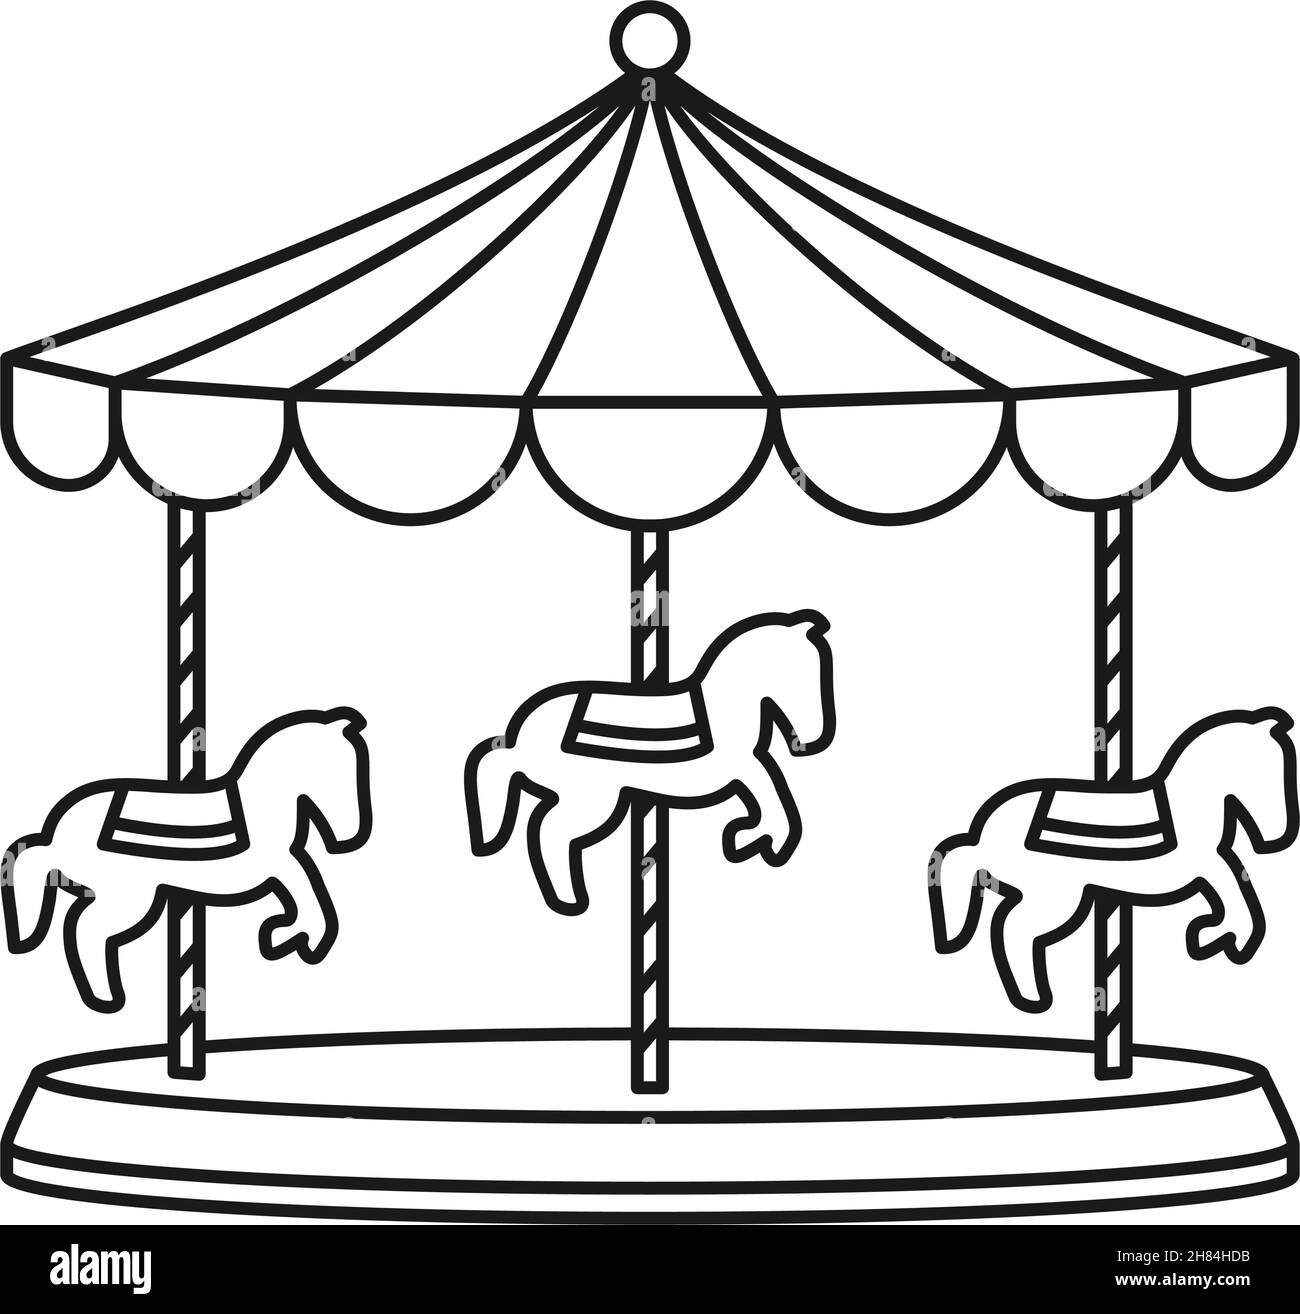 Karussell oder Karussell mit Karussell-Pferden für Vergnügungsritt in Kontur Vektor-Symbol Stock Vektor